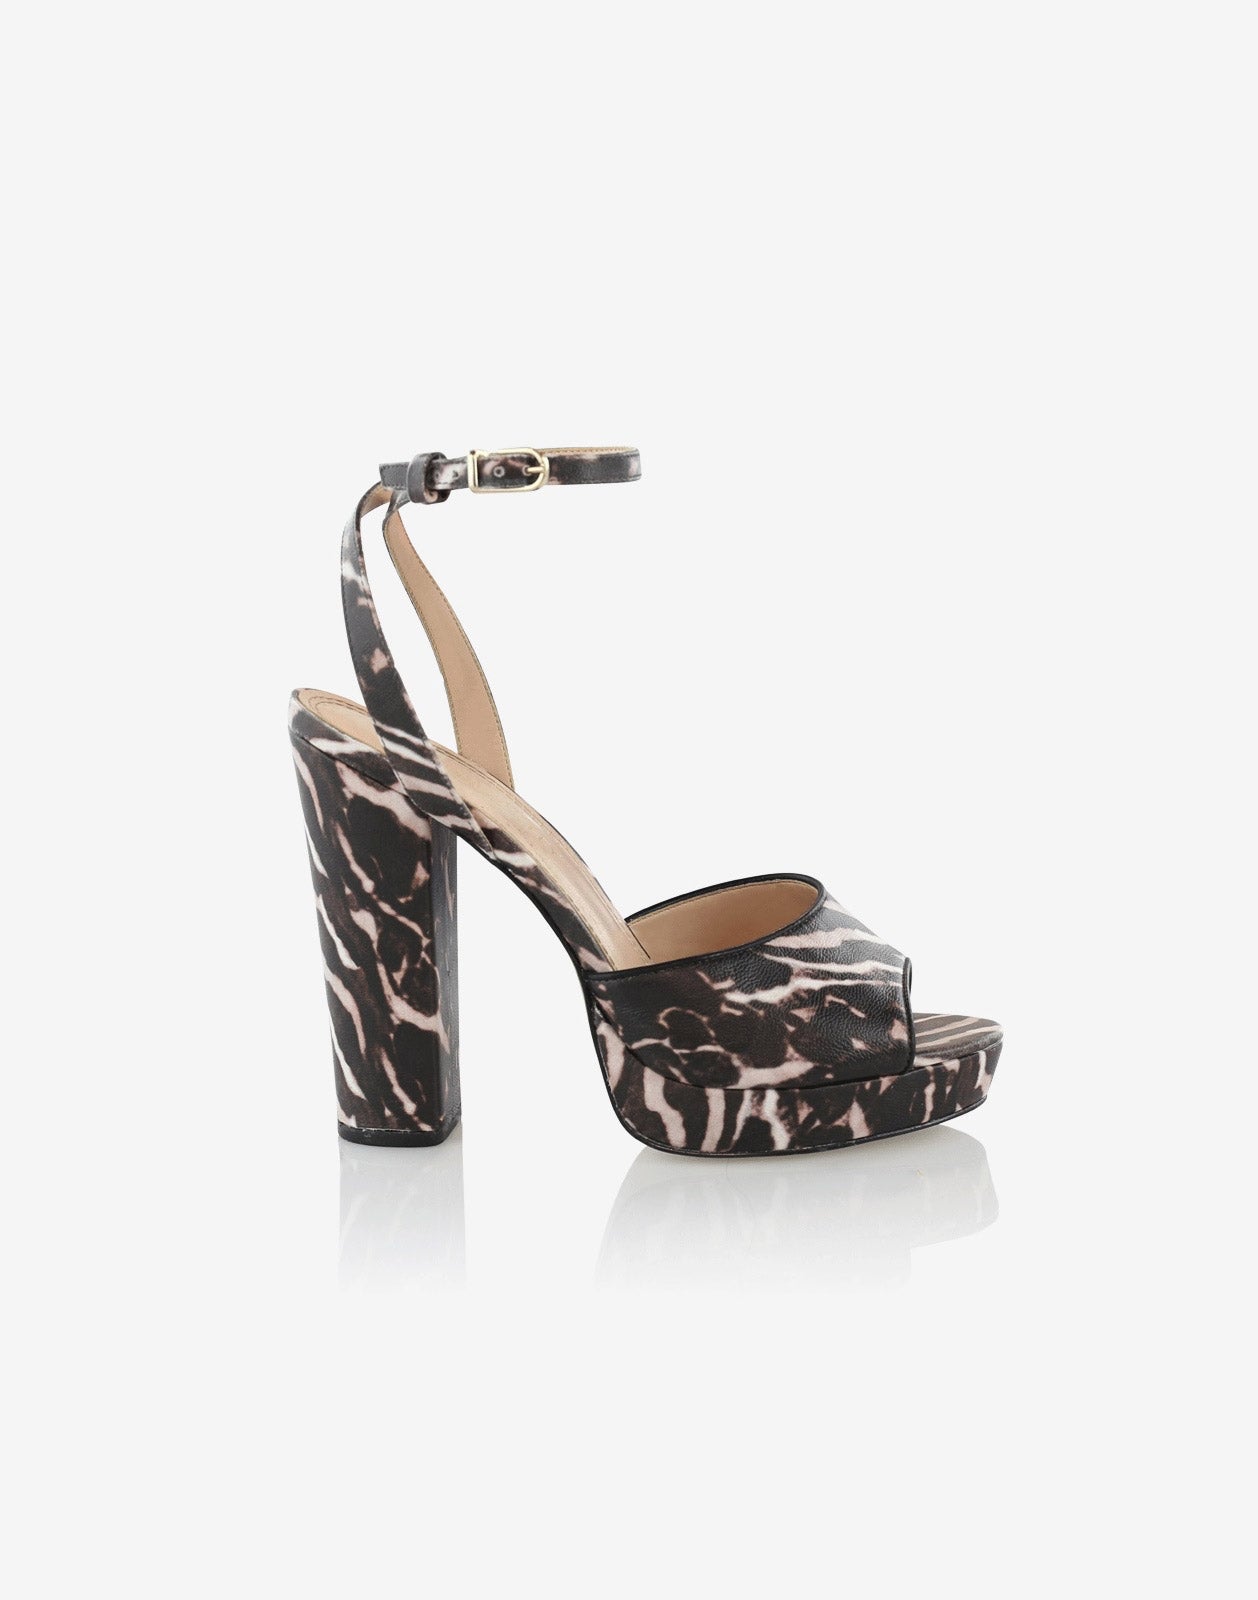 zebra platform heels